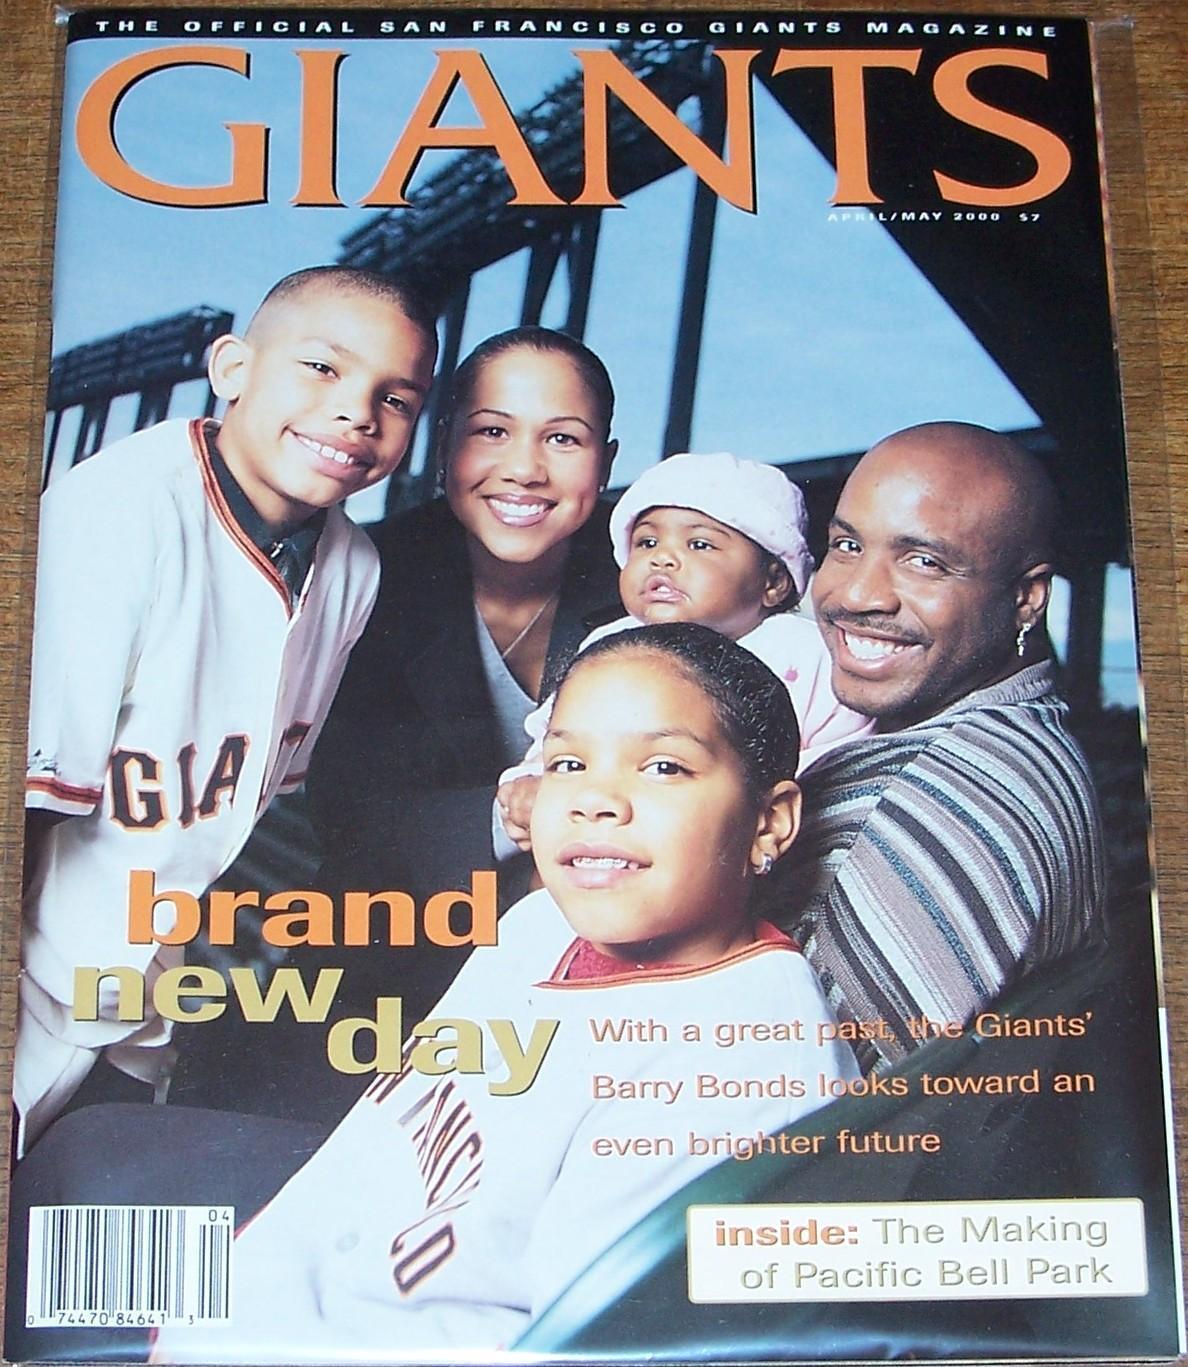 S F Giants Magazine / S.F GIANTS MAGAZINE MAY 2000